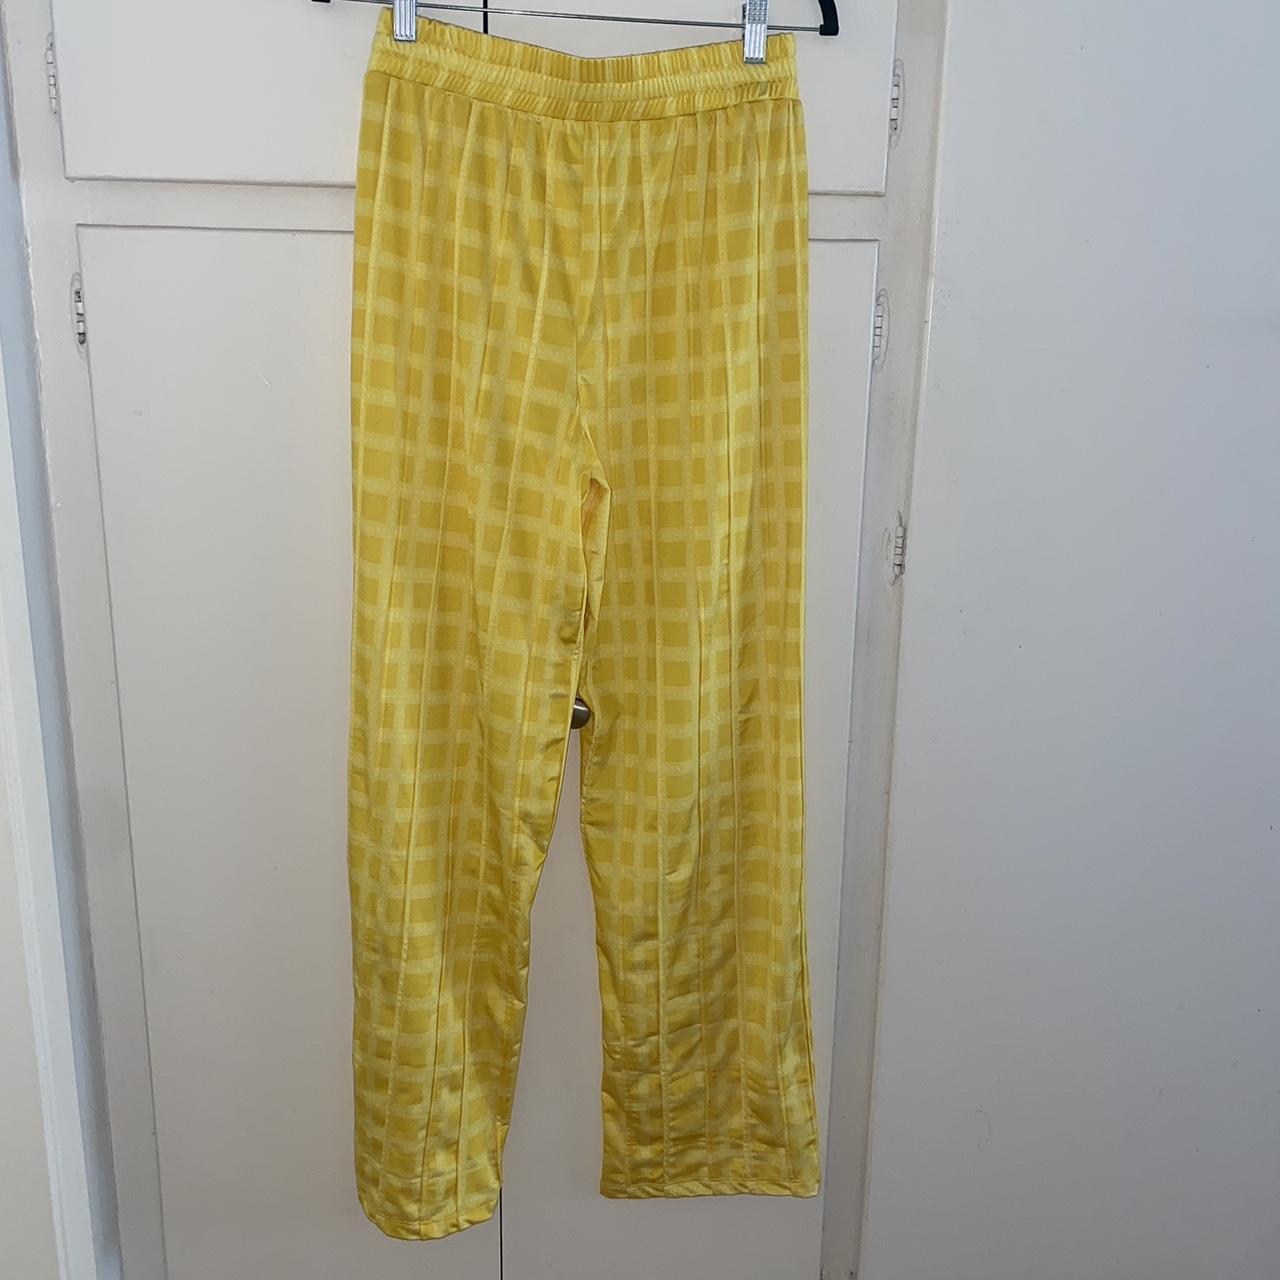 Hosbjerg Women's Yellow Trousers (2)